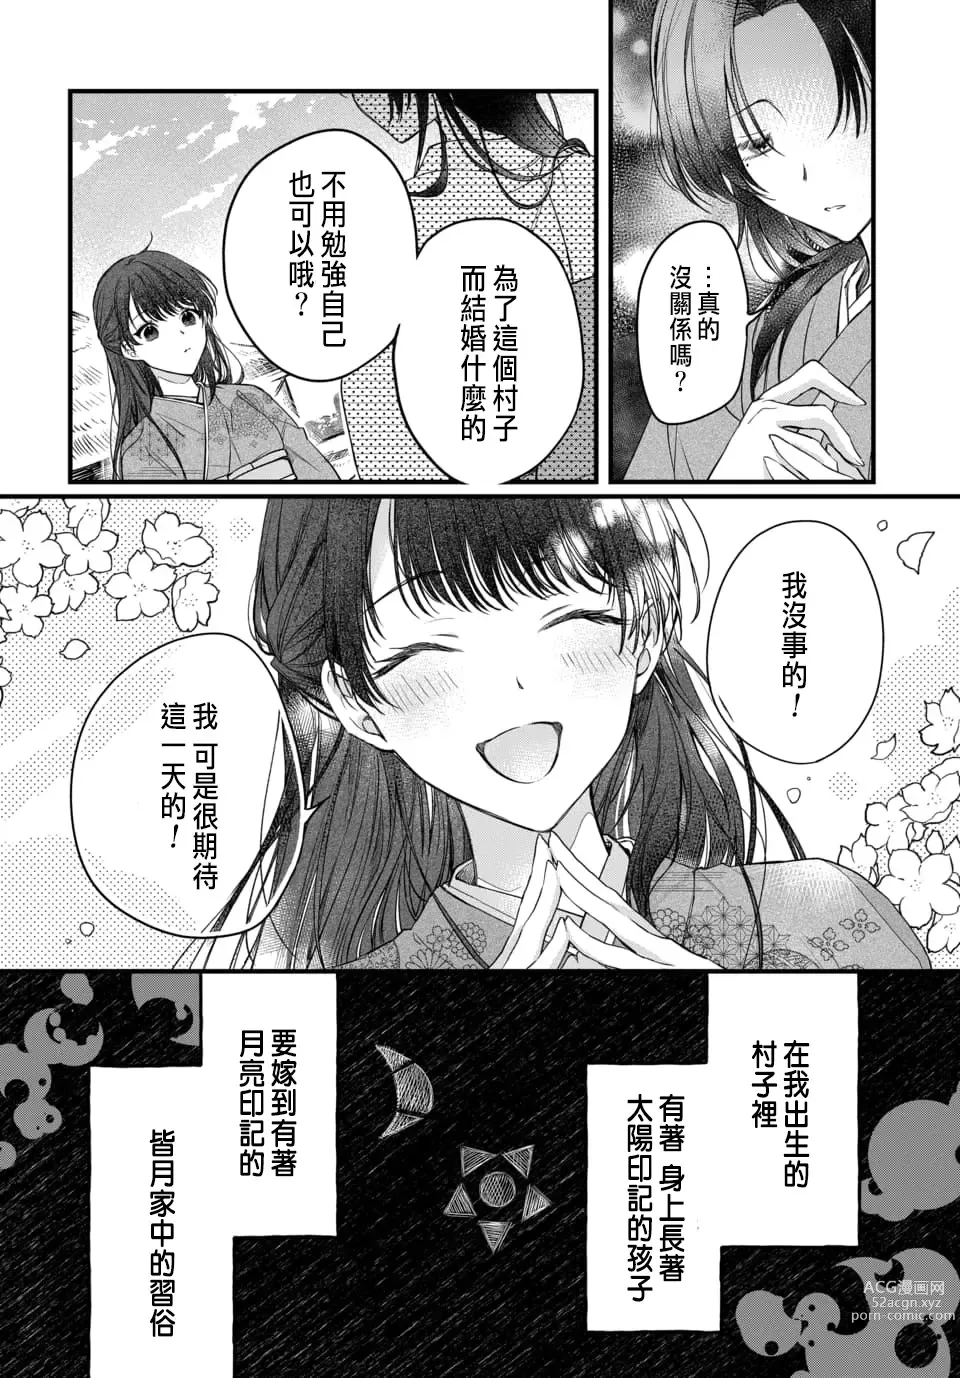 Page 7 of manga Tsuki e no Yomeiri 1-6